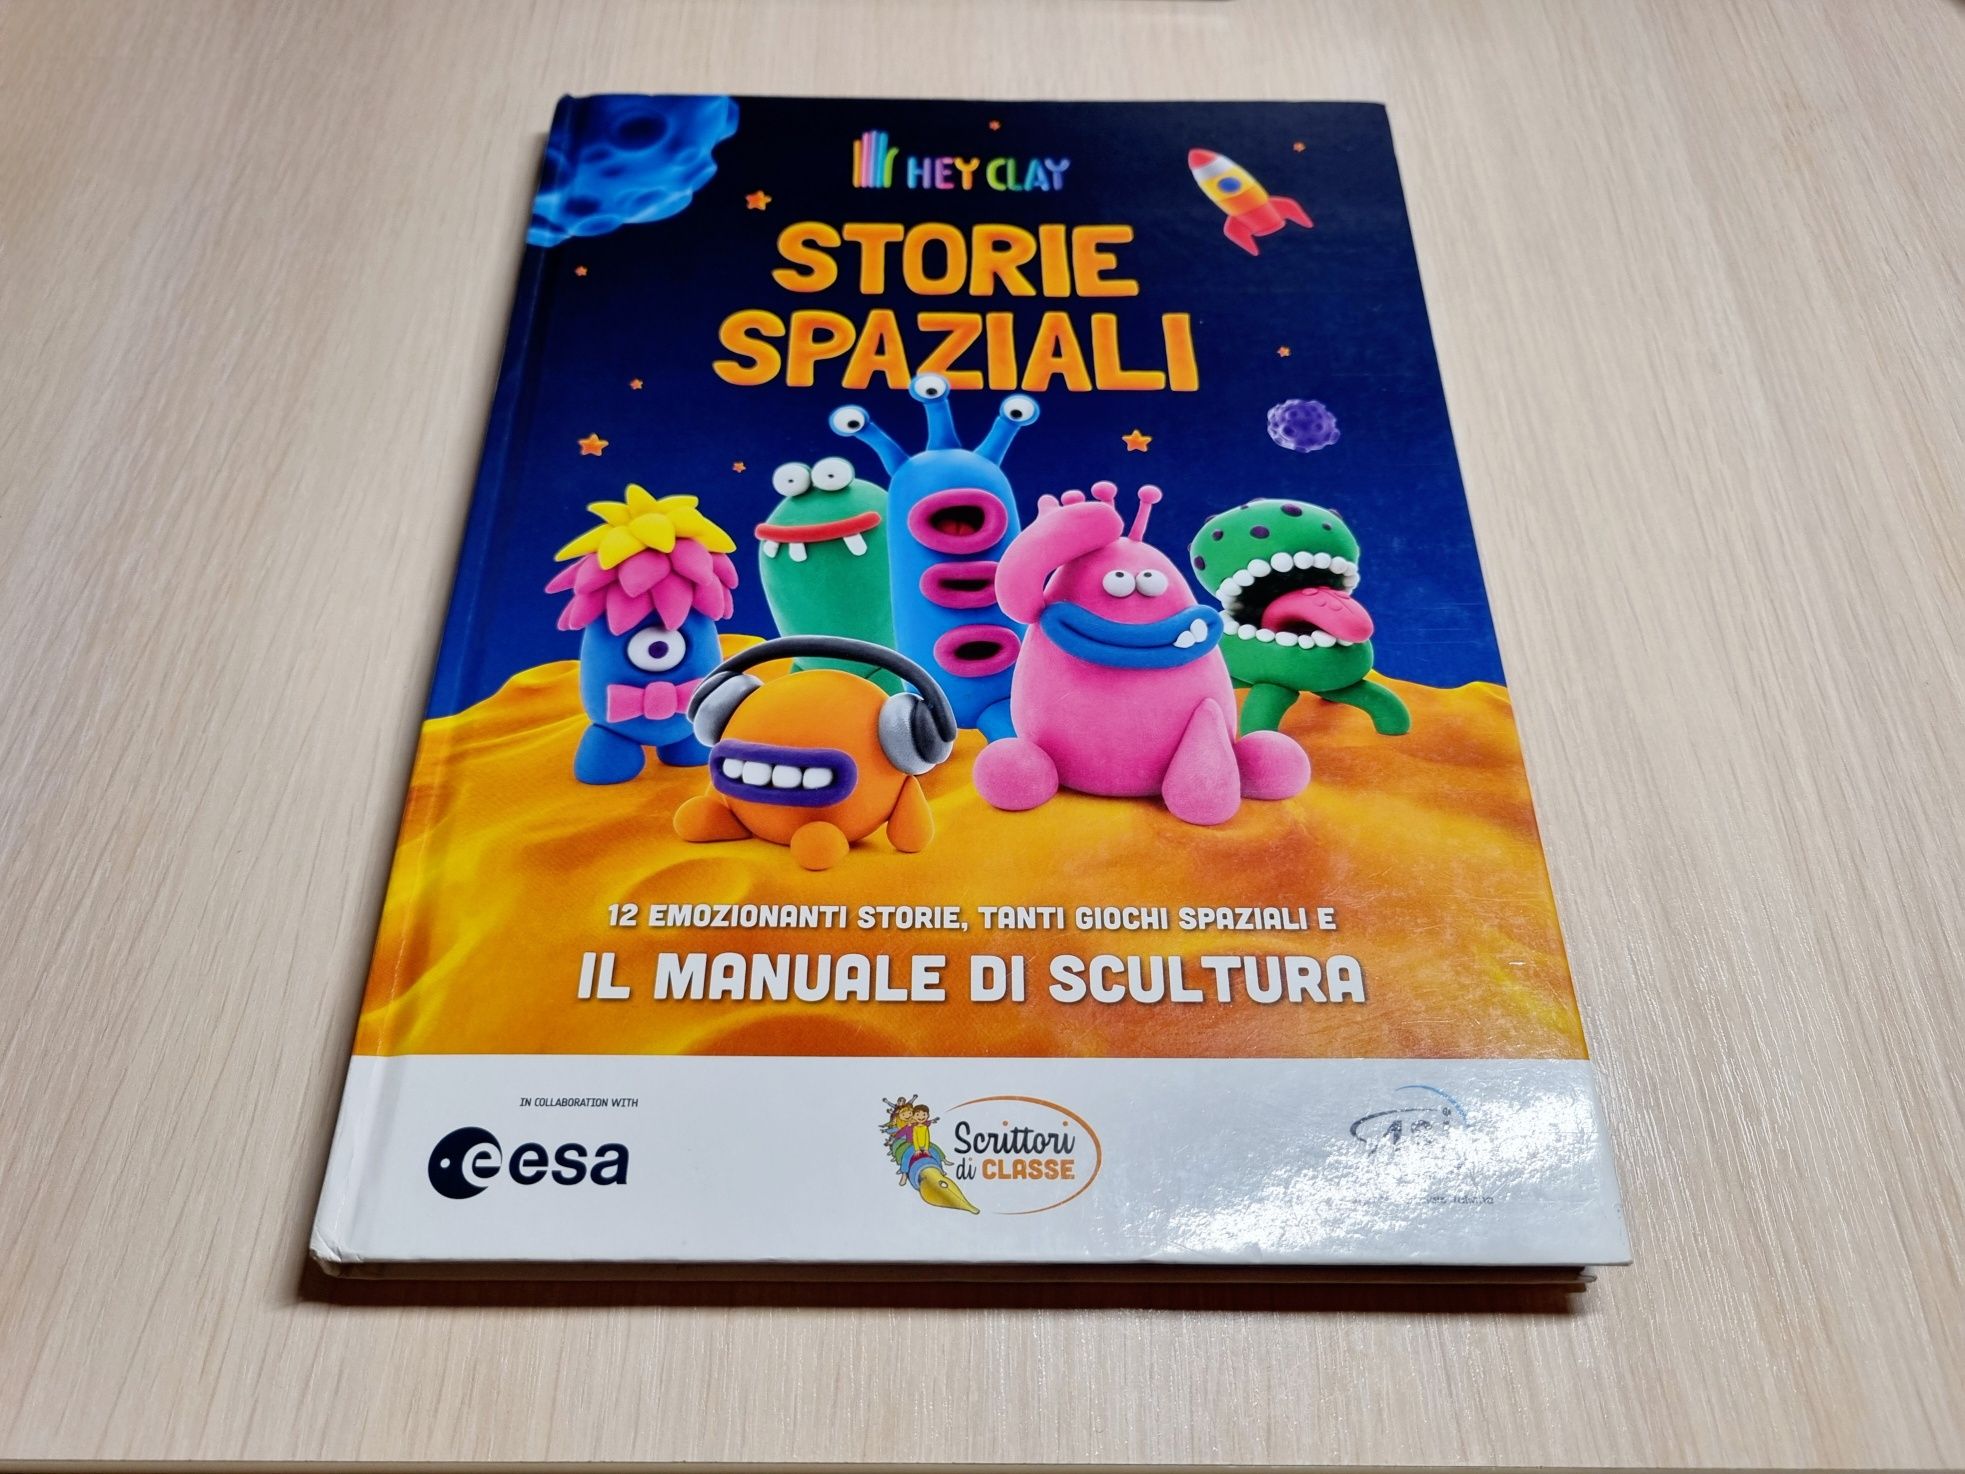 Книга - Storie spaziale (итальянский)